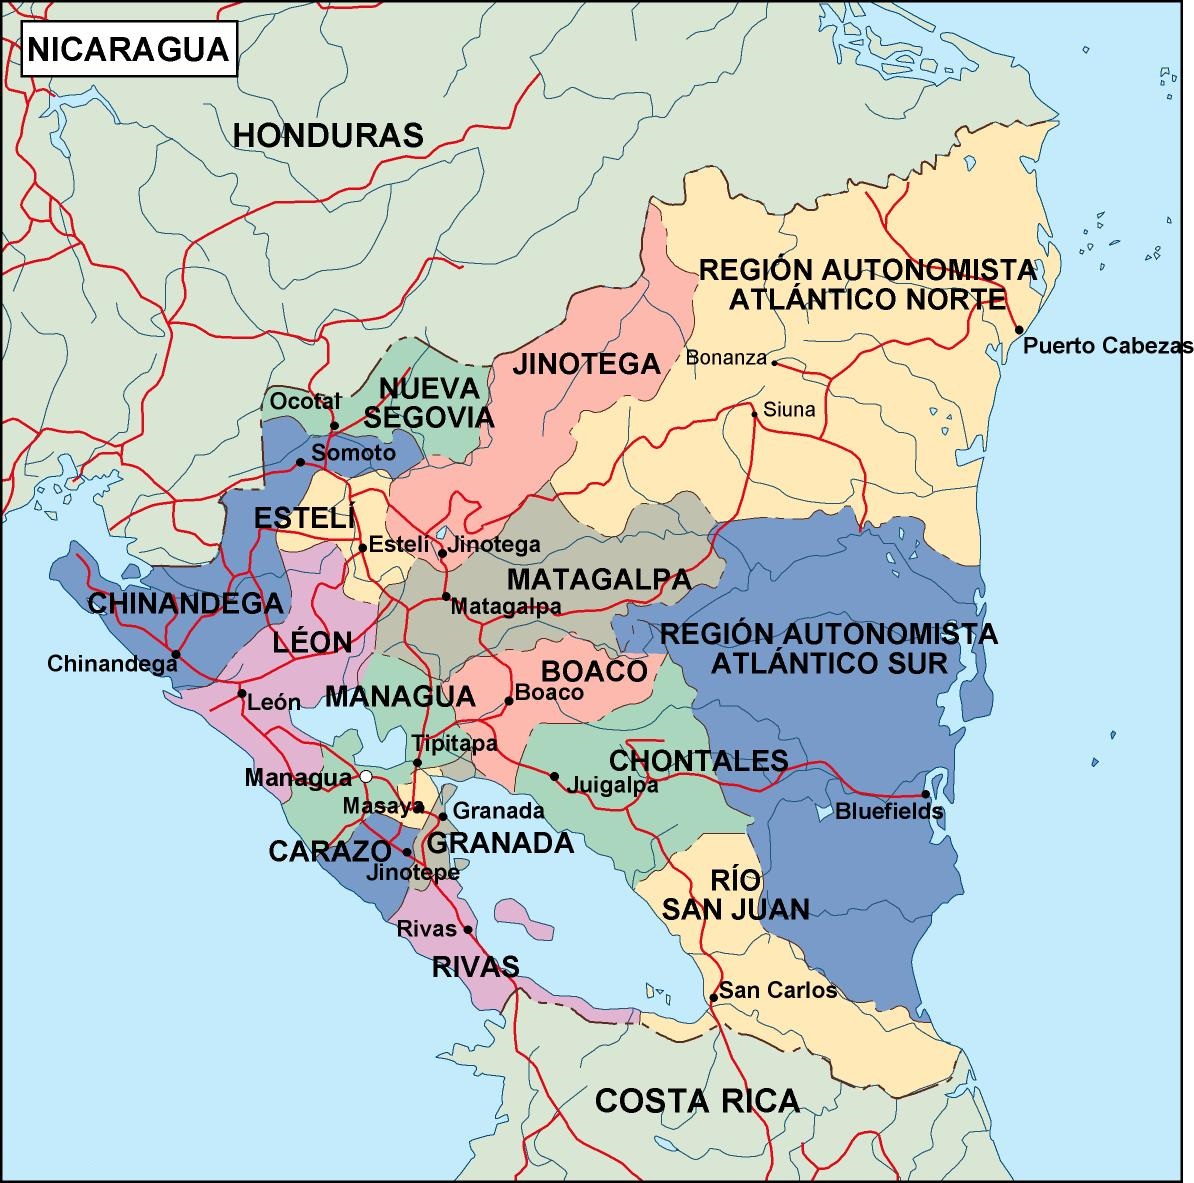 El Mapa Detallado De Nicaragua Con Las Regiones O Estados Y Ciudades